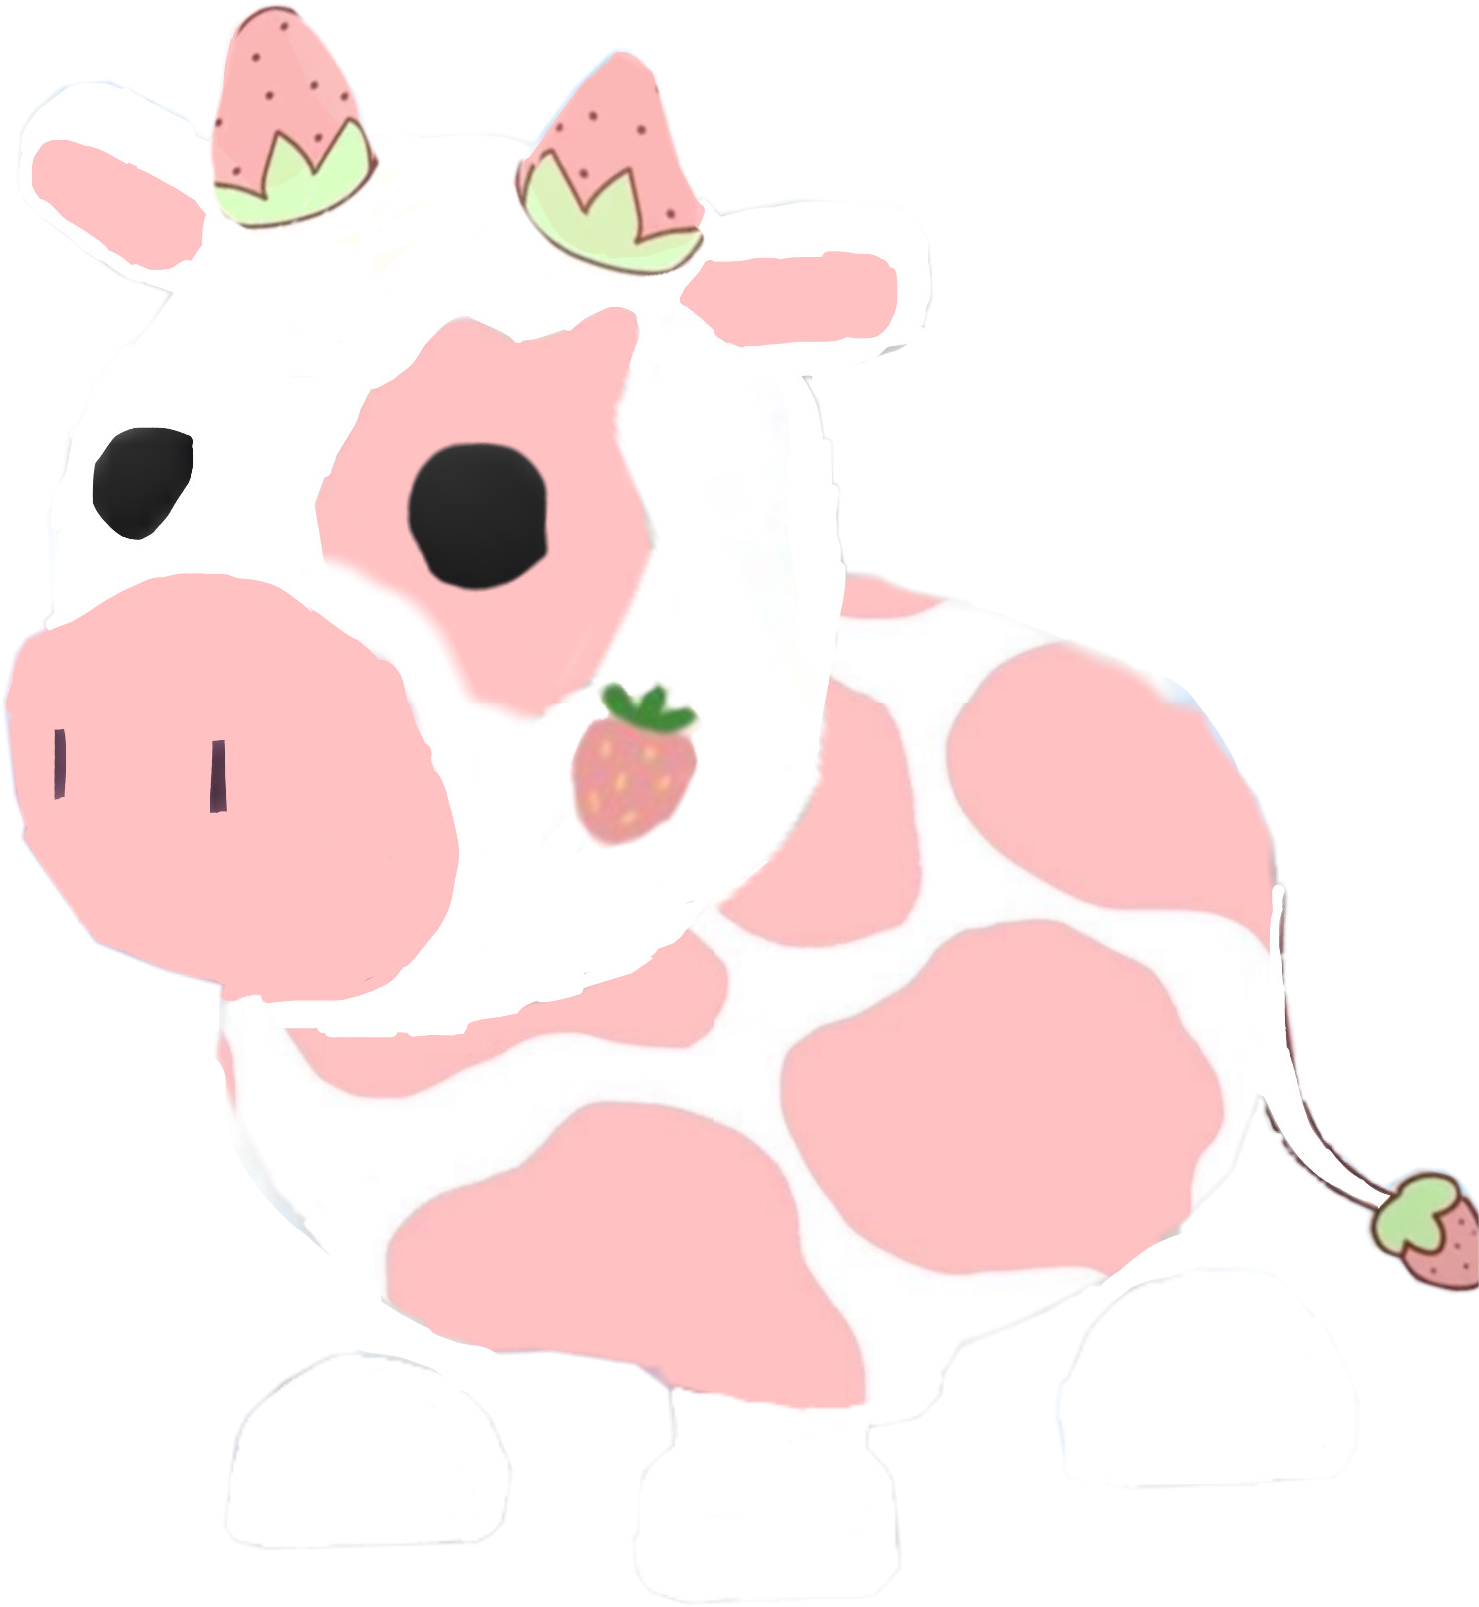 strawberrycow adoptme cow adoptmecow sticker by @rudolpha04